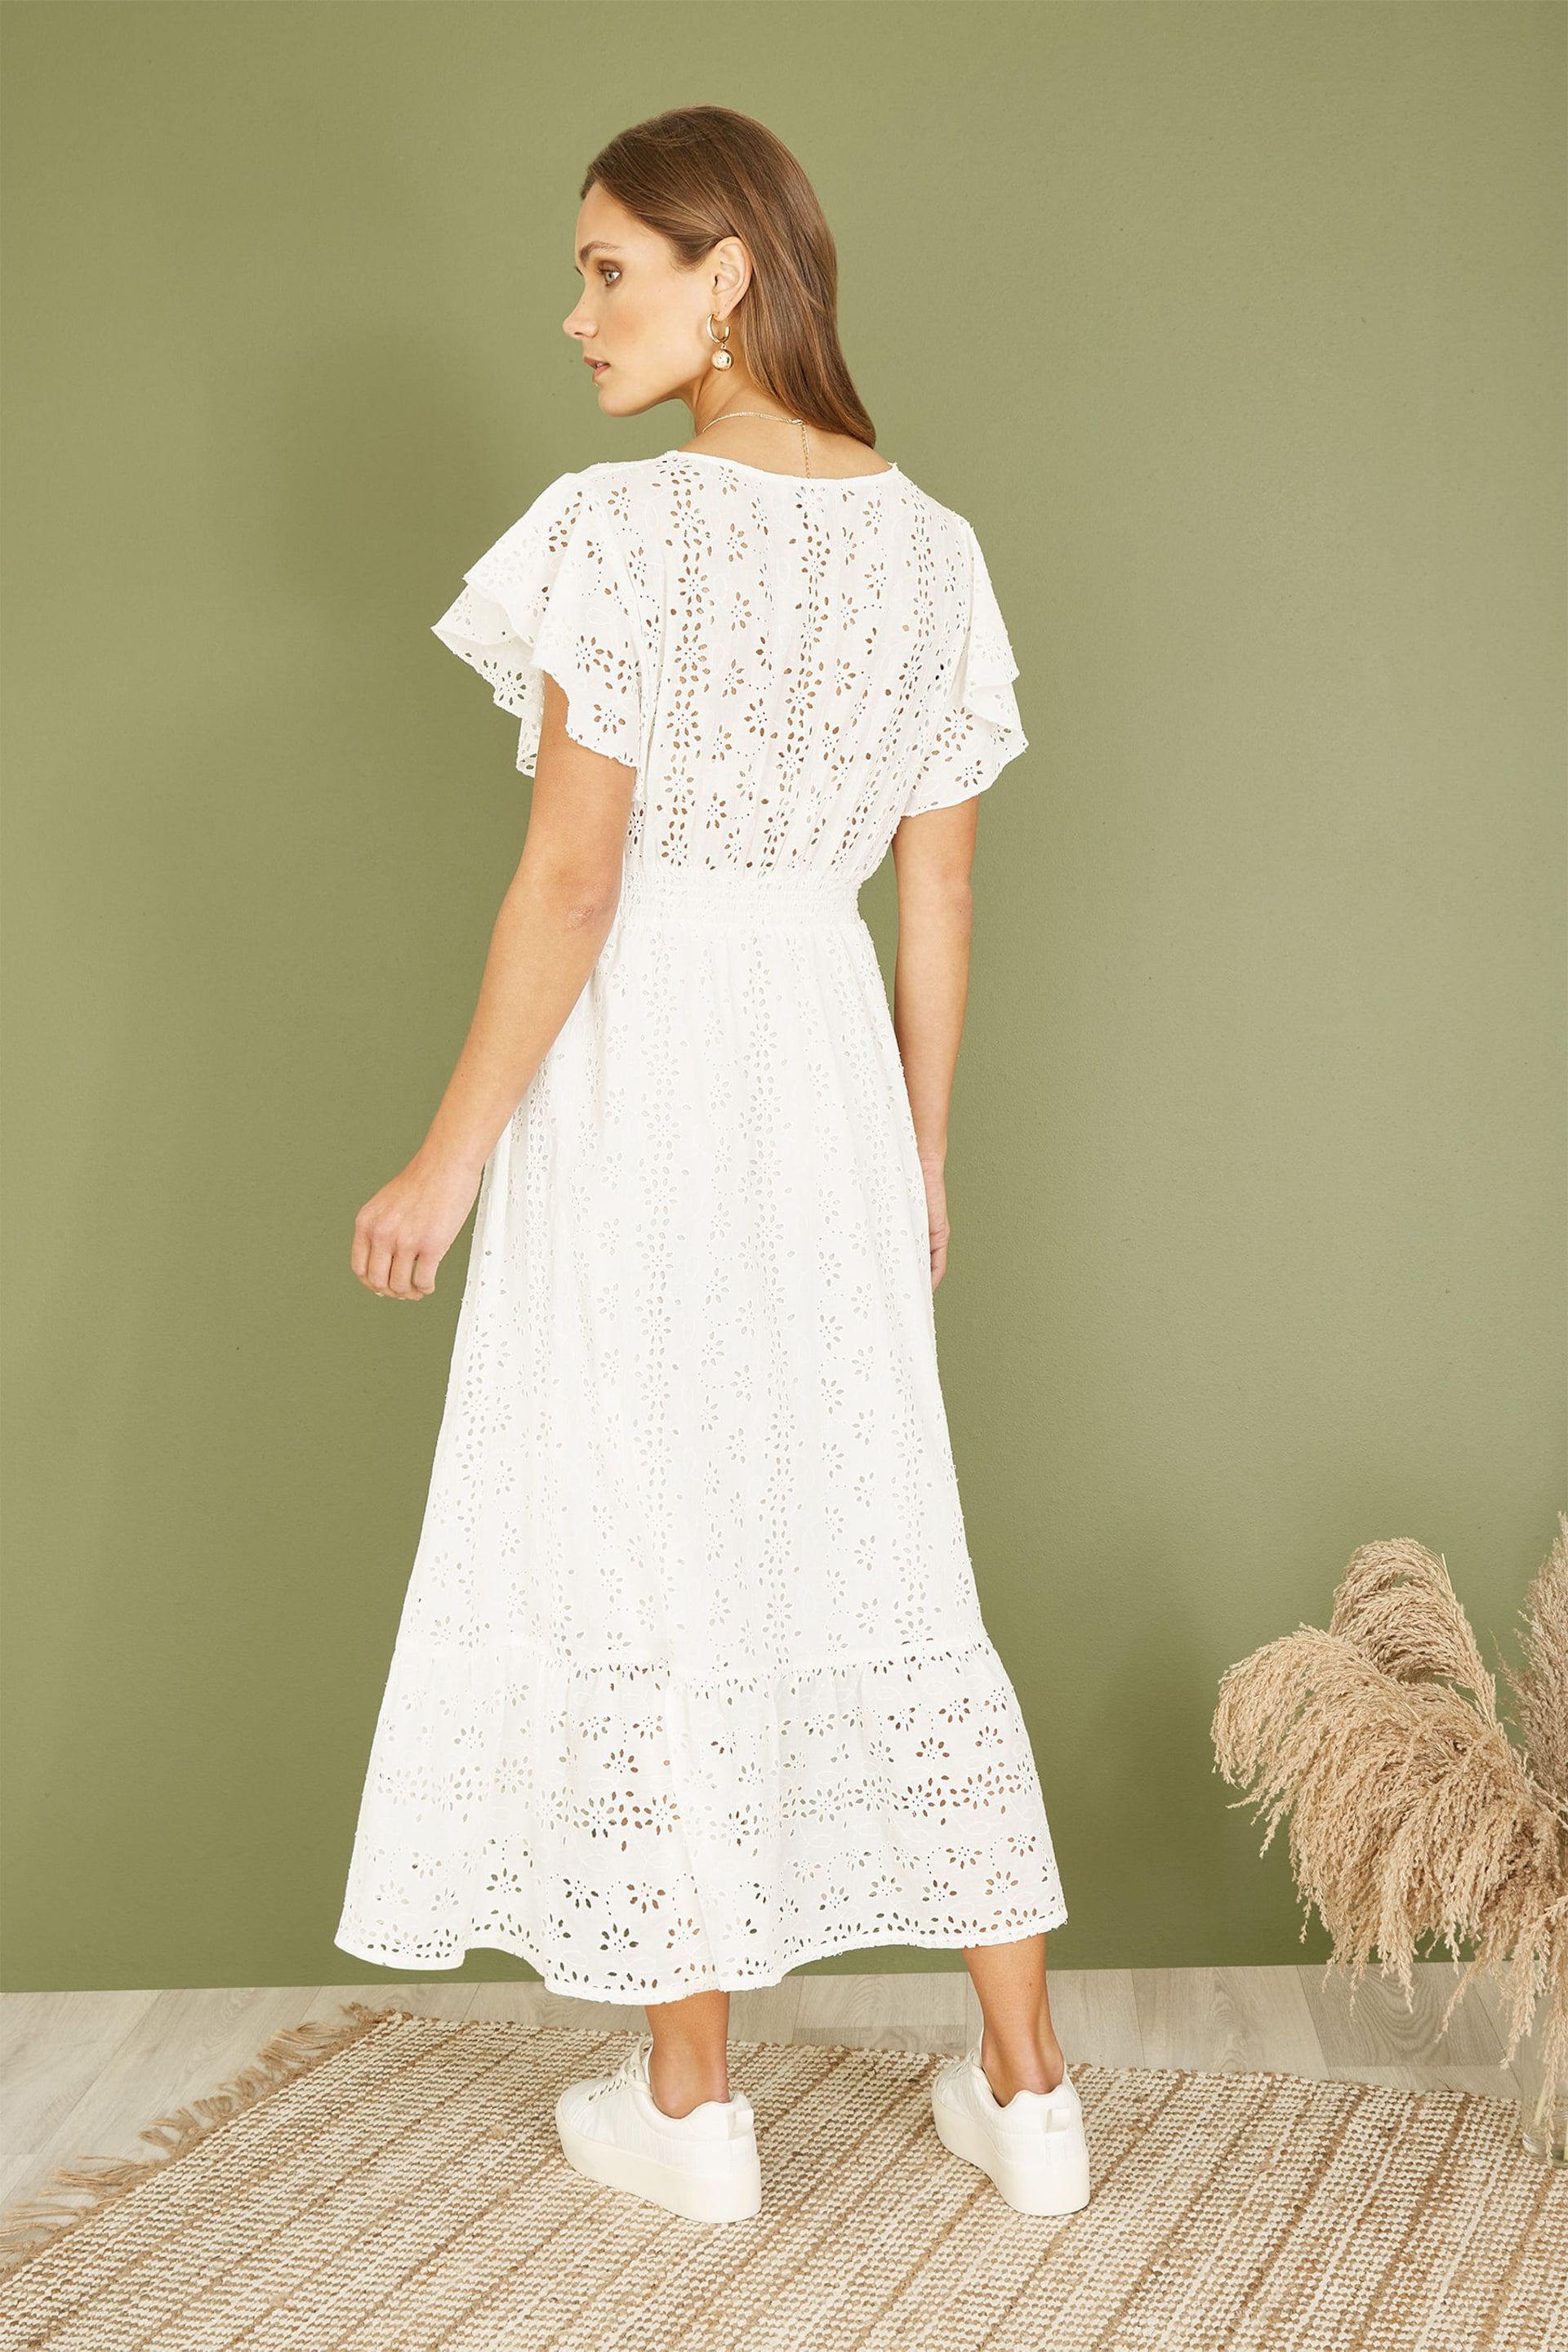 Mela White Cotton Broderie Anglaise Wrap Midi Dress - Image 4 of 5